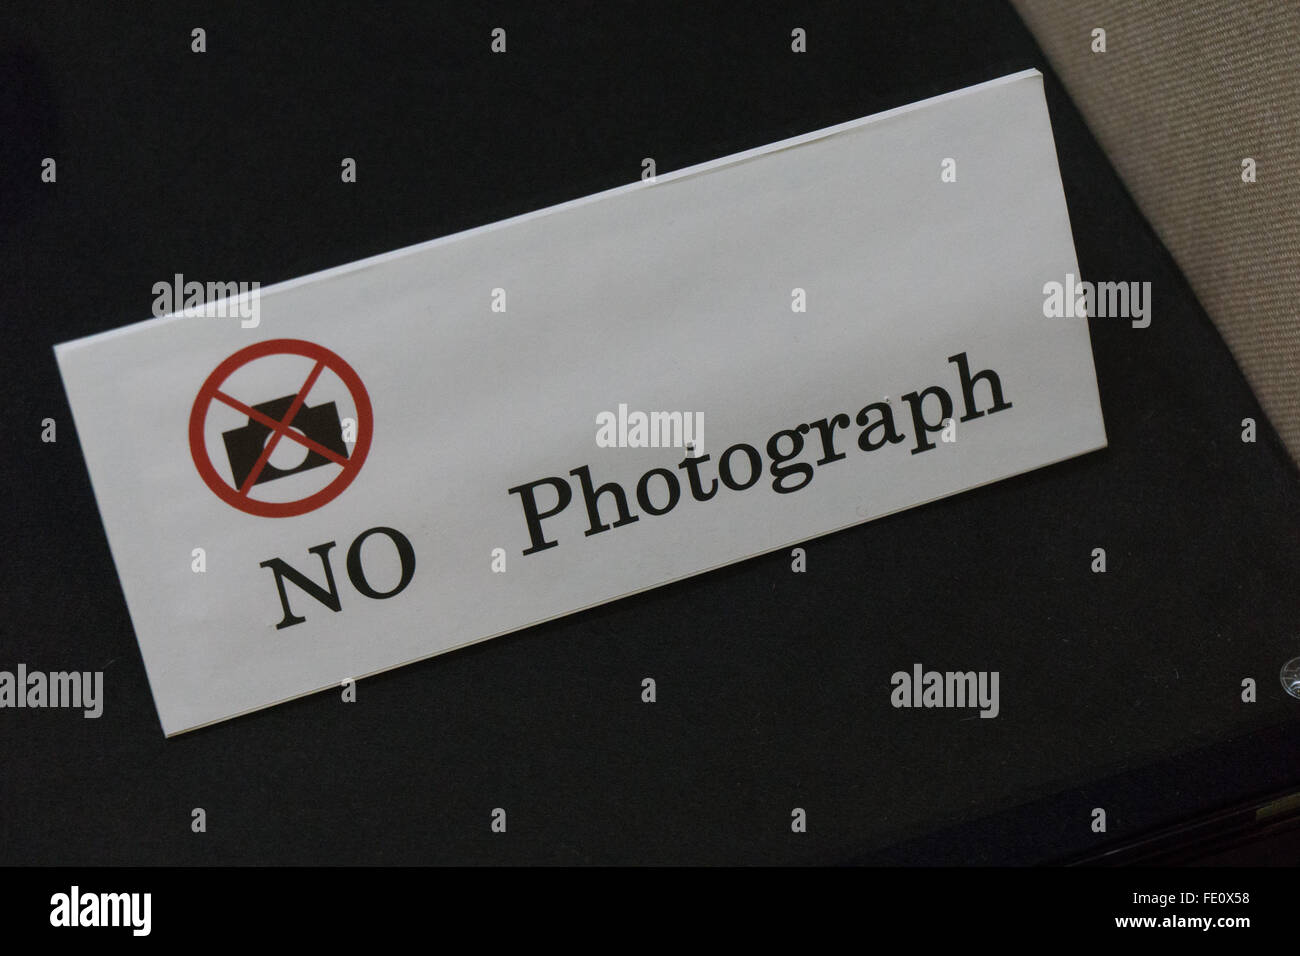 no photos photograph sign Stock Photo